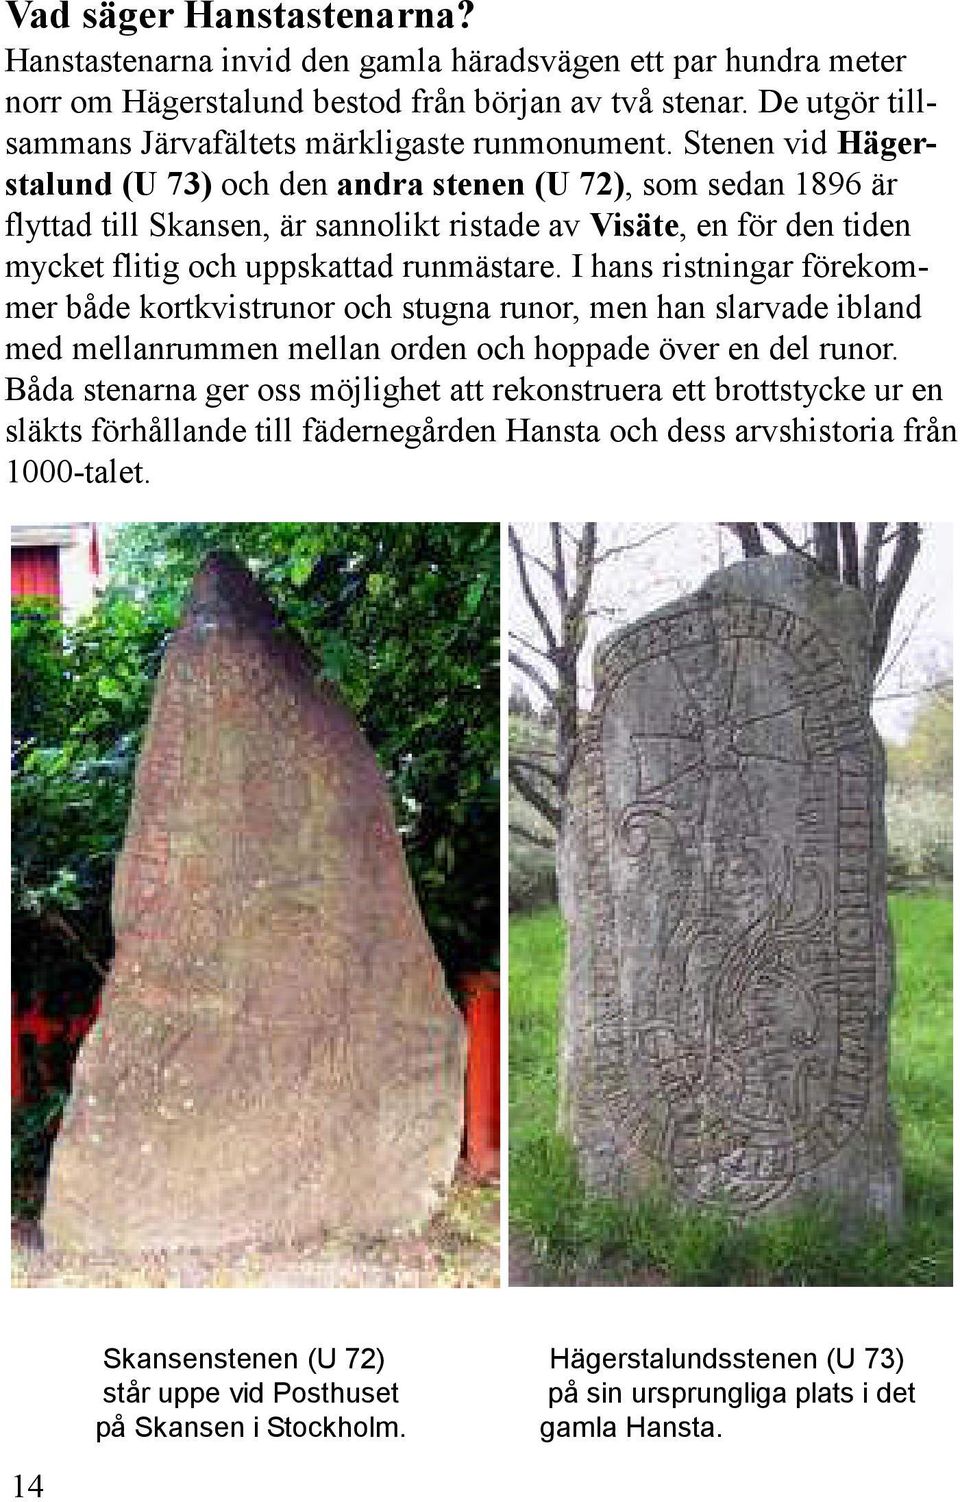 Stenen vid Hägerstalund (U 73) och den andra stenen (U 72), som sedan 1896 är flyttad till Skansen, är sannolikt ristade av Visäte, en för den tiden mycket flitig och uppskattad runmästare.